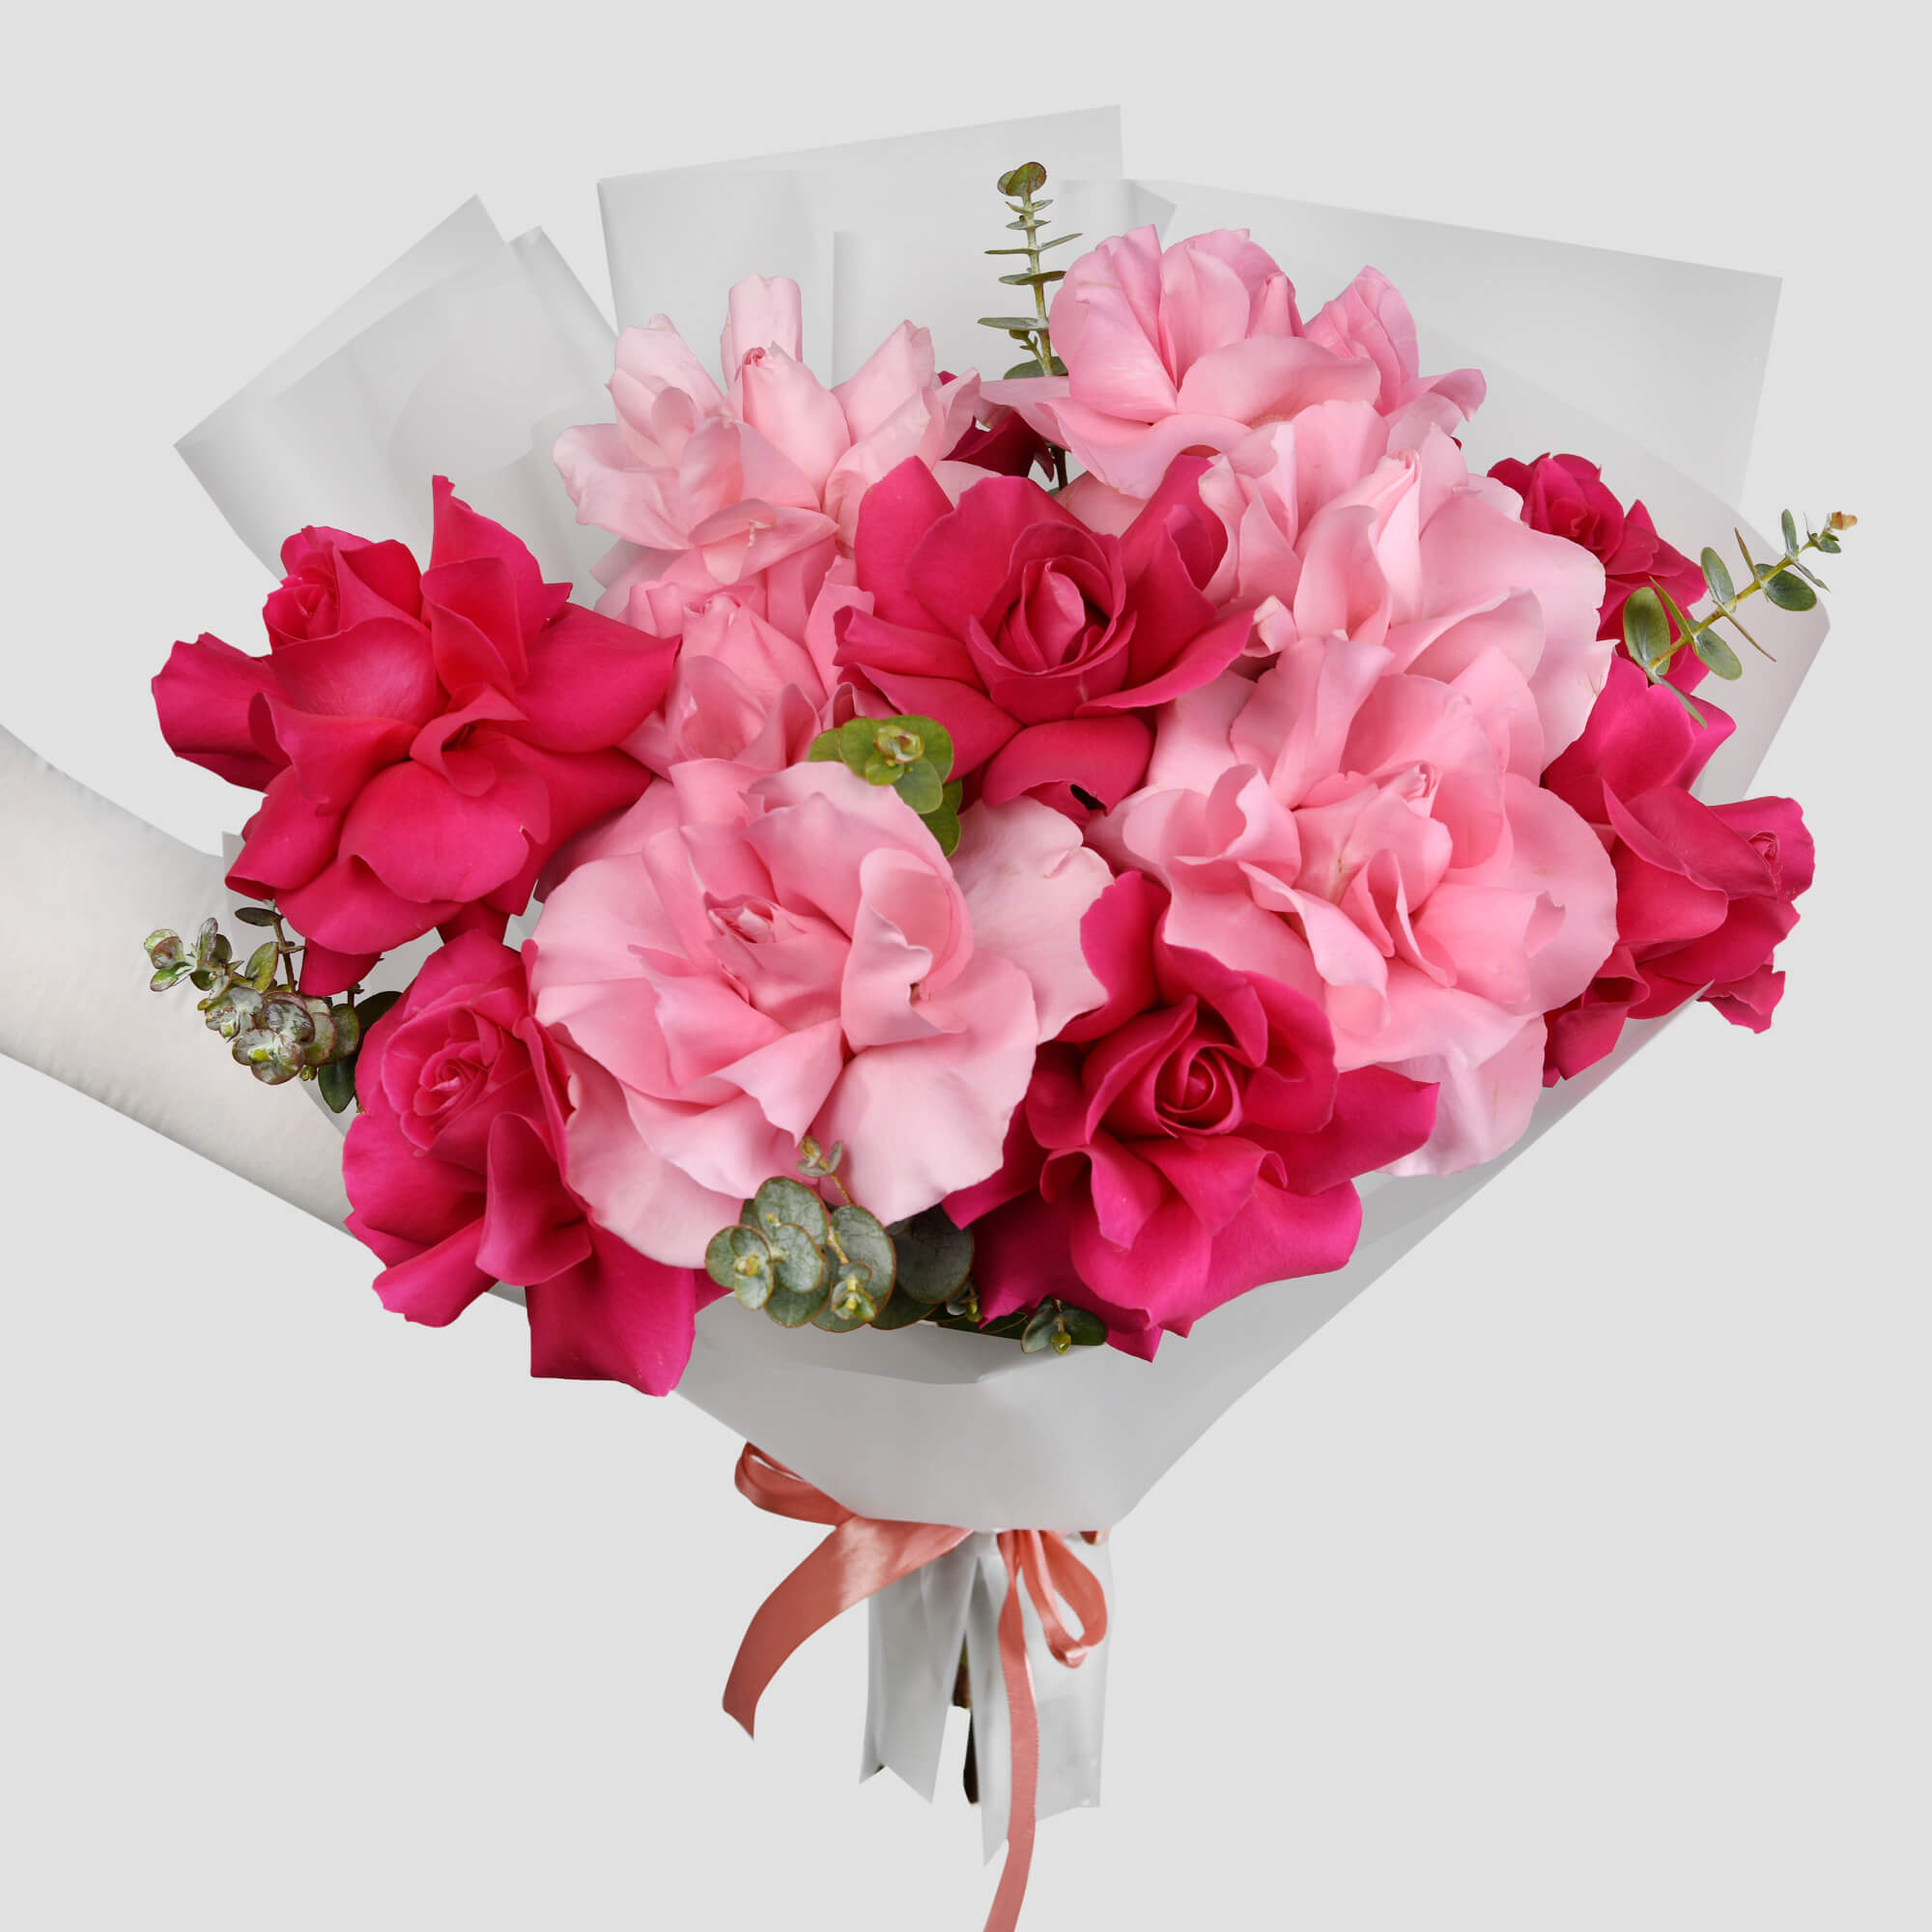 Buchet cu trandafiri speciali roz multicolori, 1